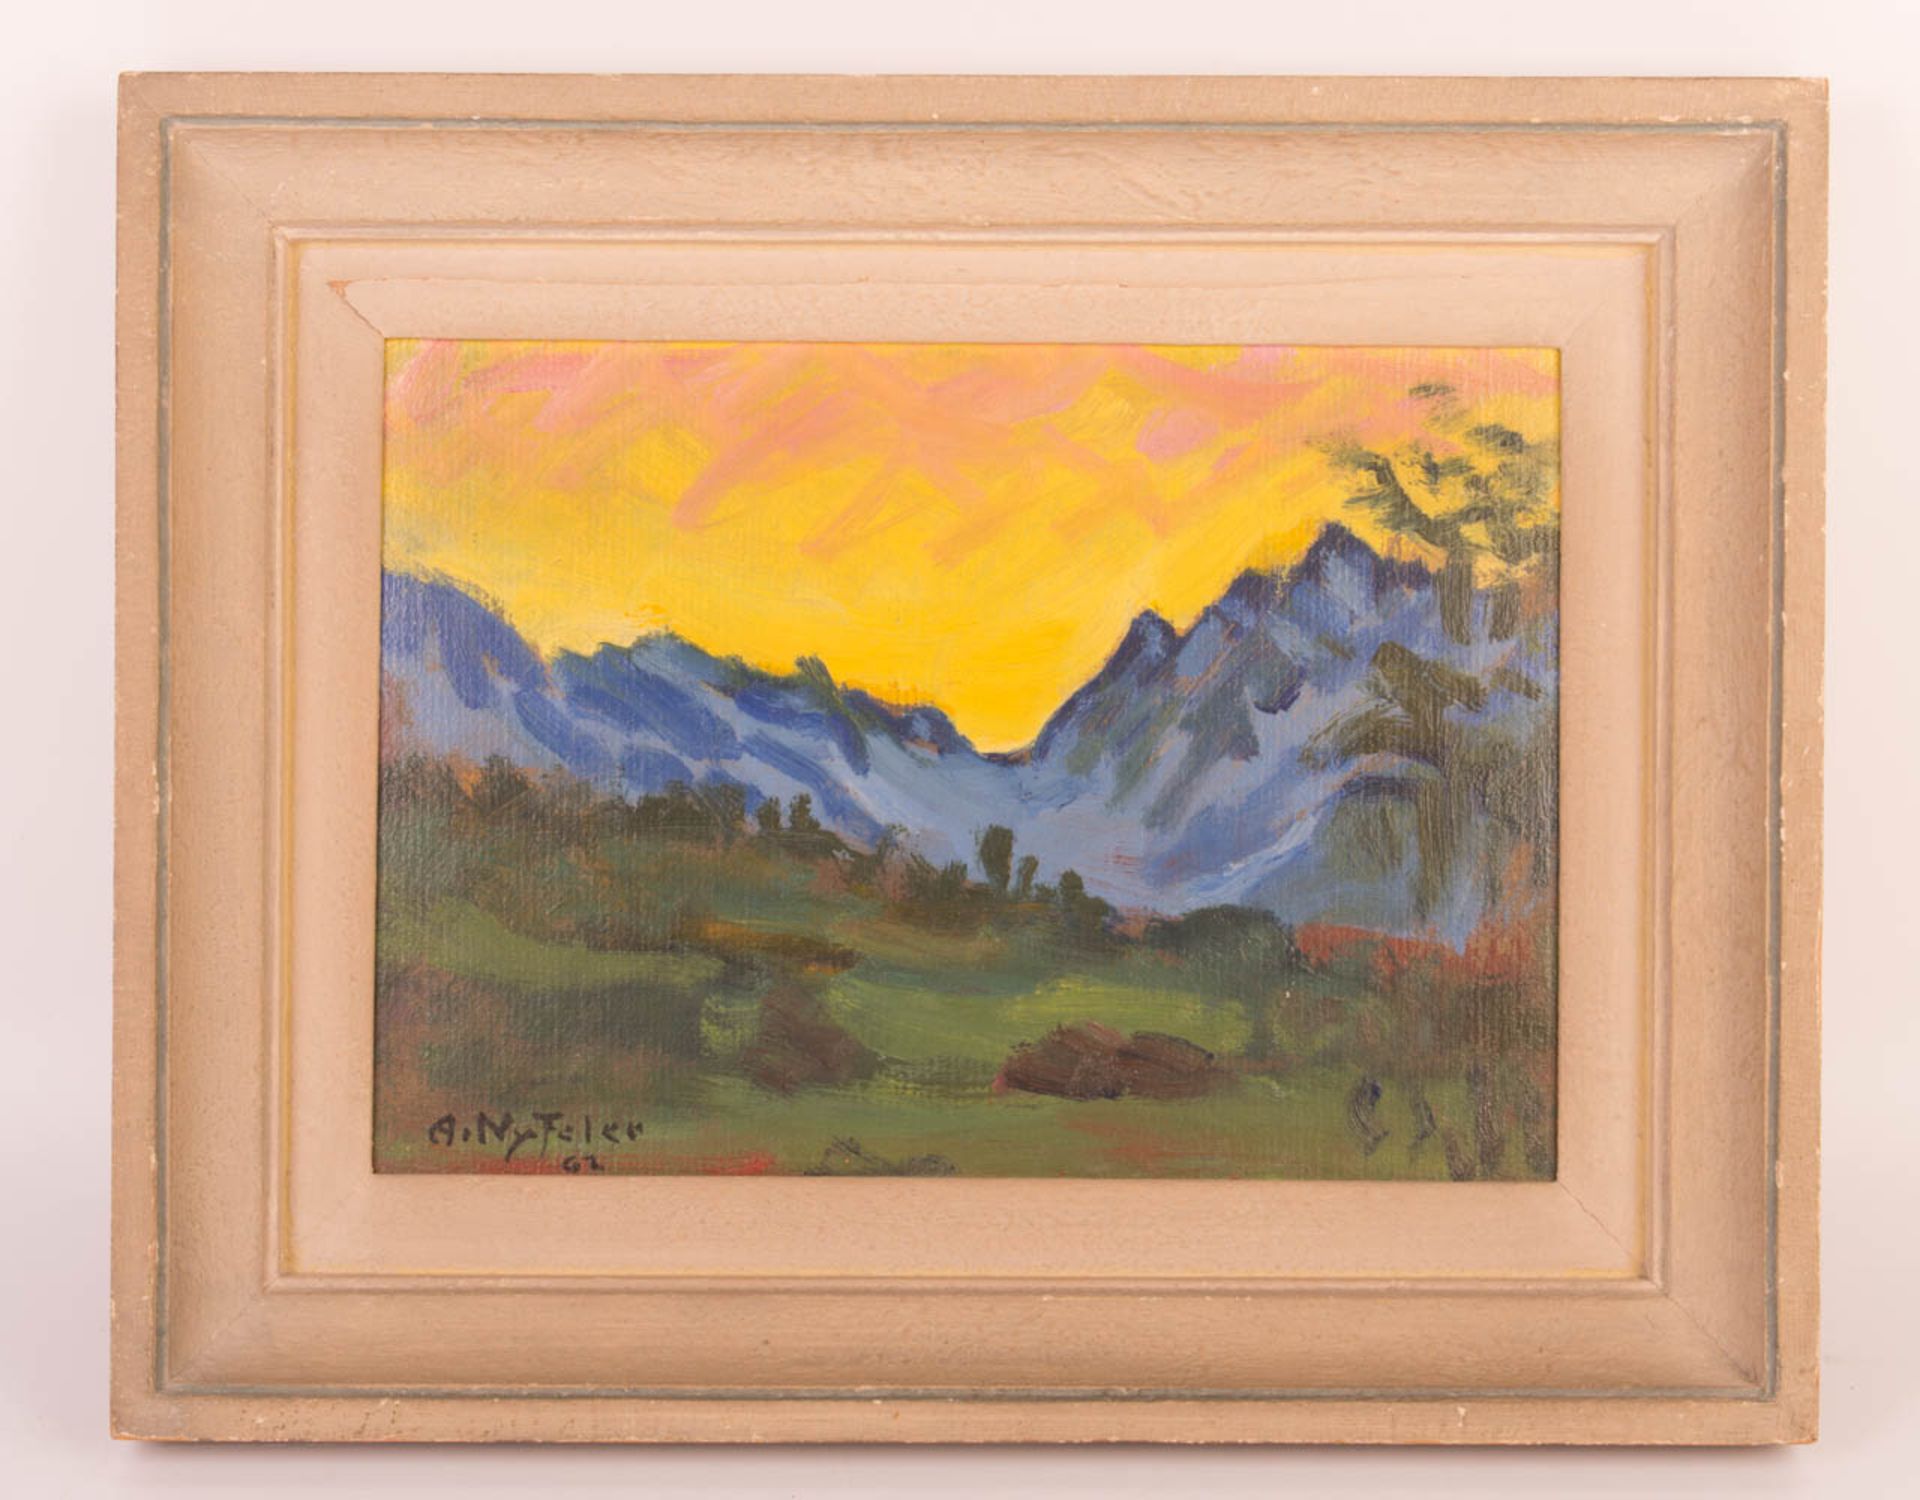 Signiert A. NyFeler, 'Vor Sonnenaufgang', Öl auf Holz, Schweiz 1962.